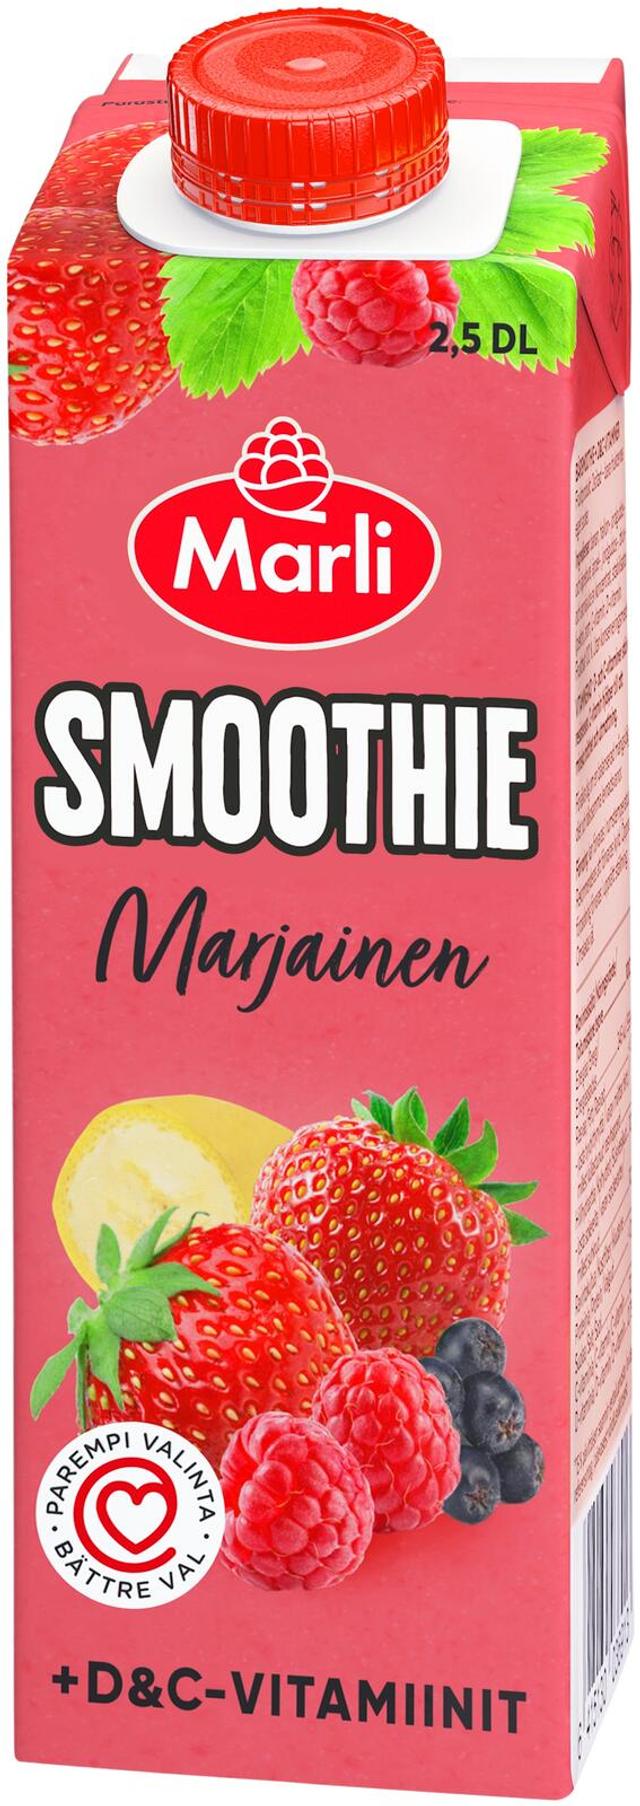 Marli Marjainen smoothie + D&C -vitamiinit 0,25L